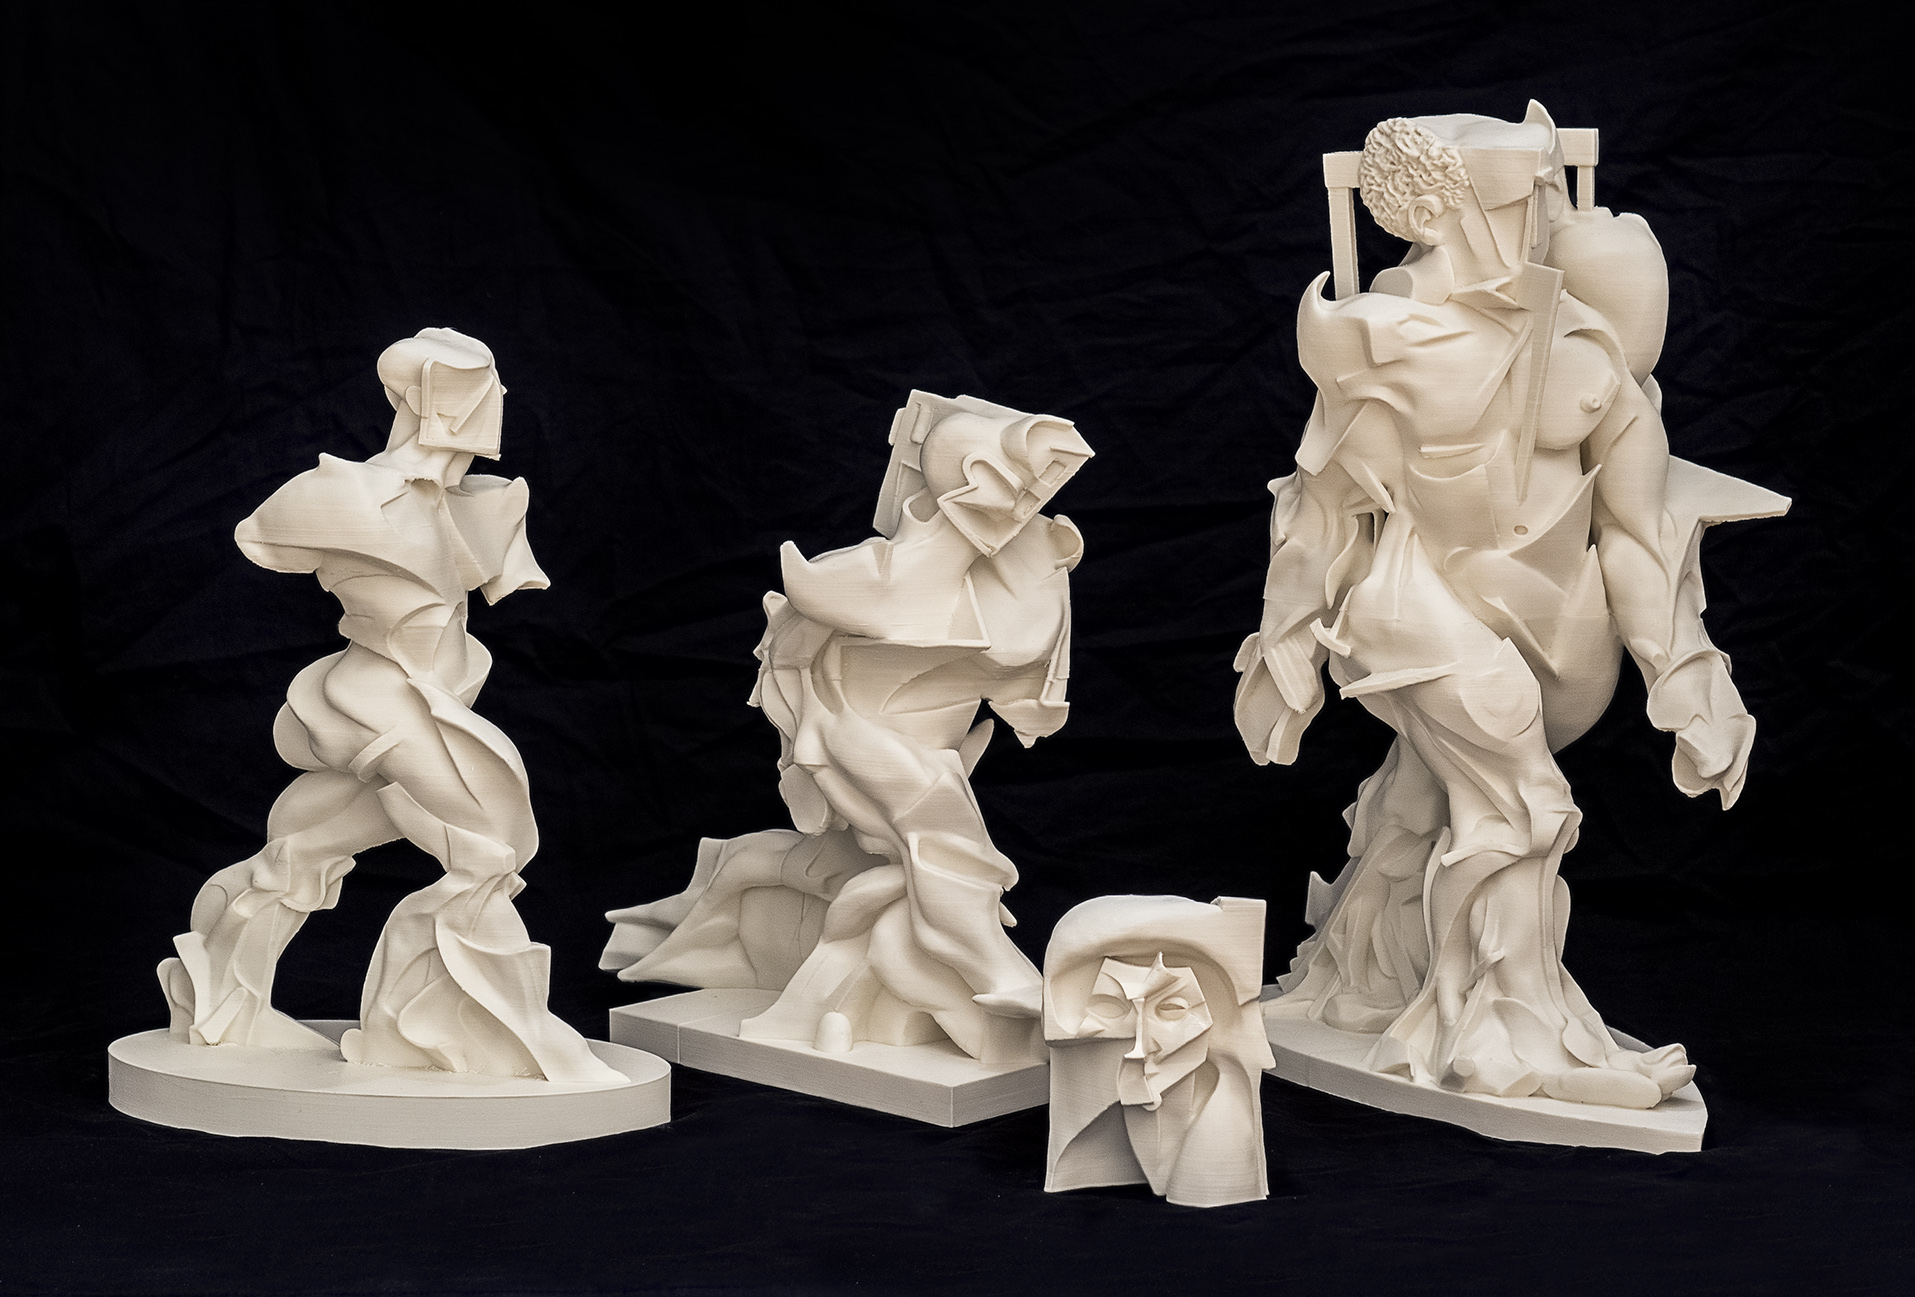 Boccioni's recreated sculptures